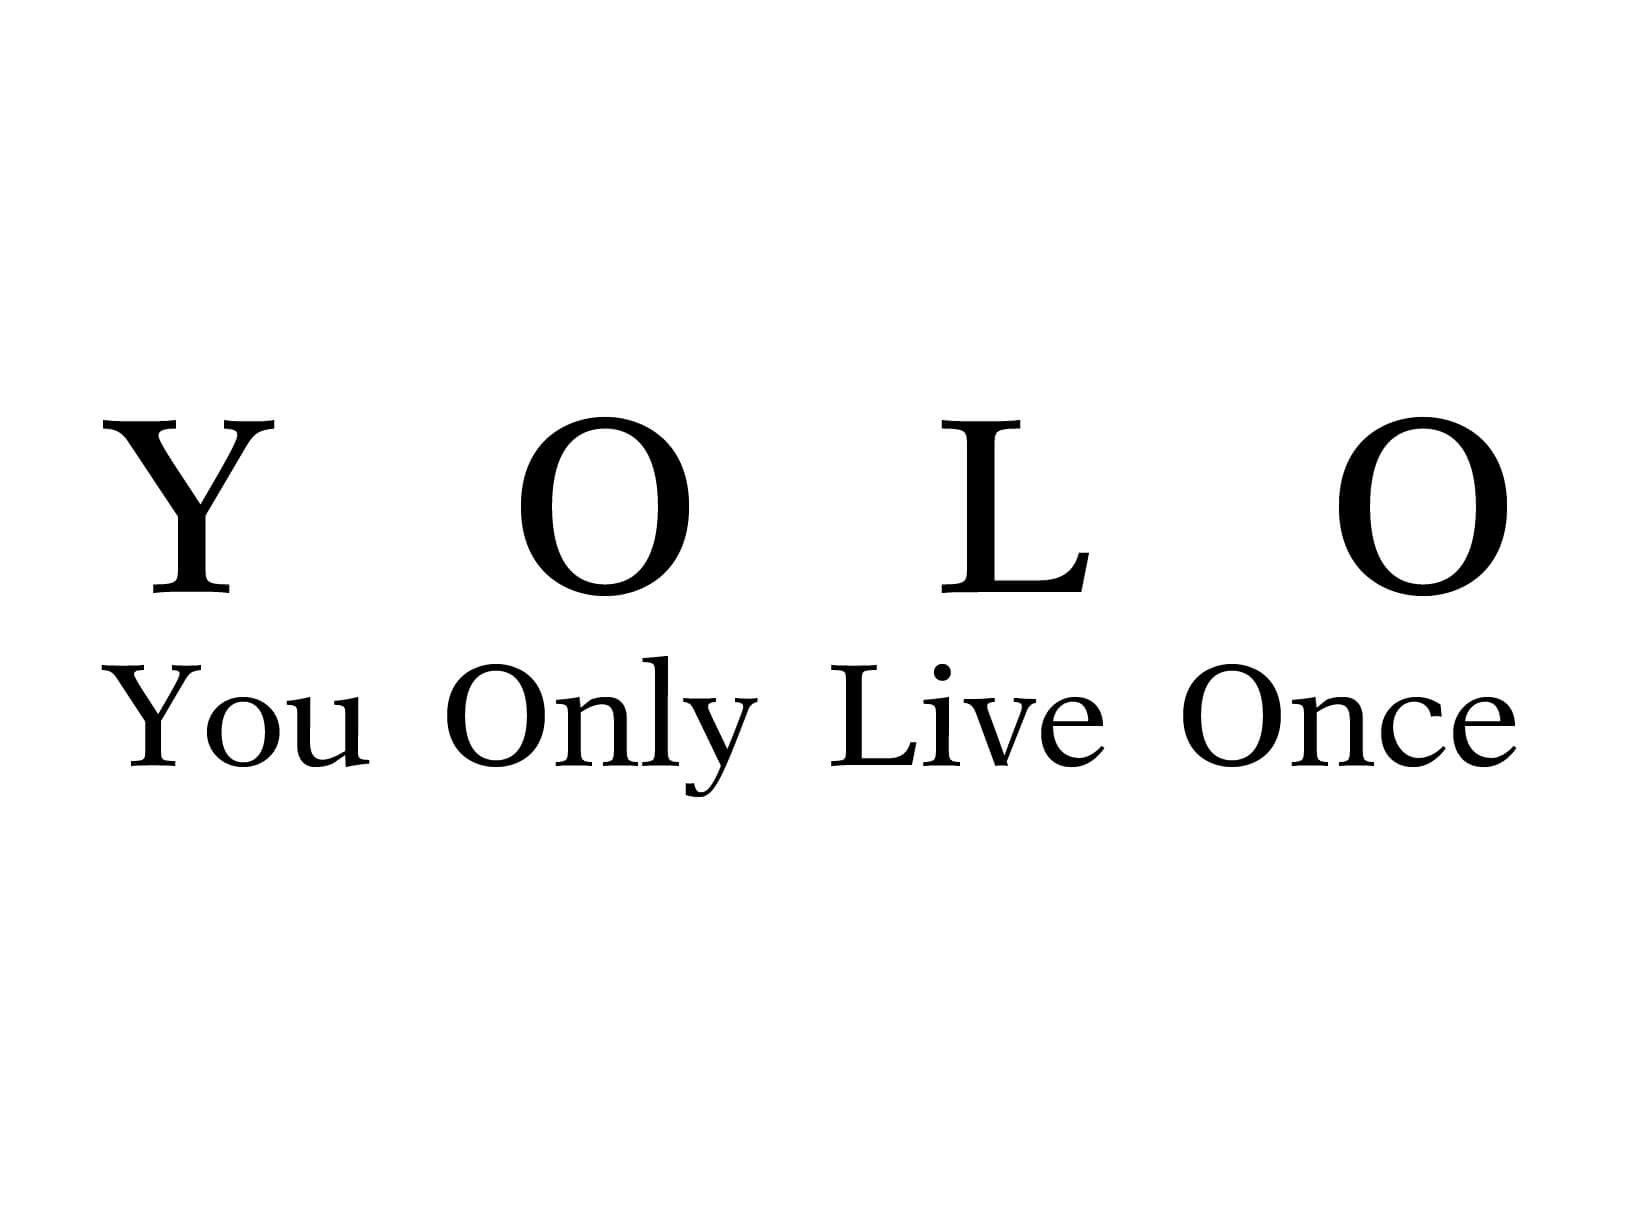 Лост анджелес текст френдли таг. You only Live once. Yolo: you only Live once. You only Live once тату. You only Live once надпись.